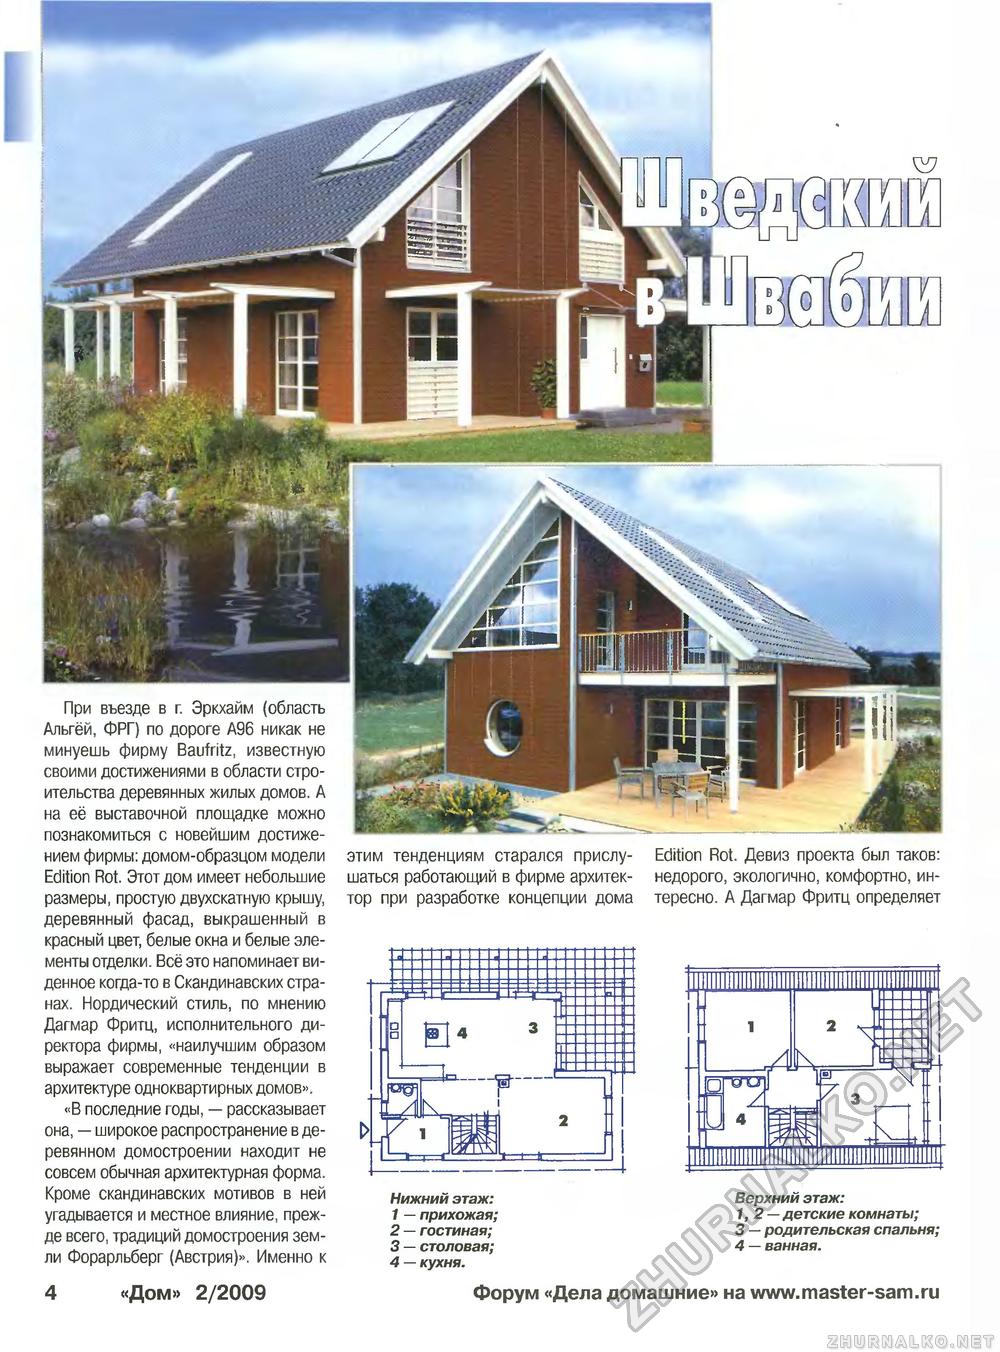 Дом 2009-02, страница 4